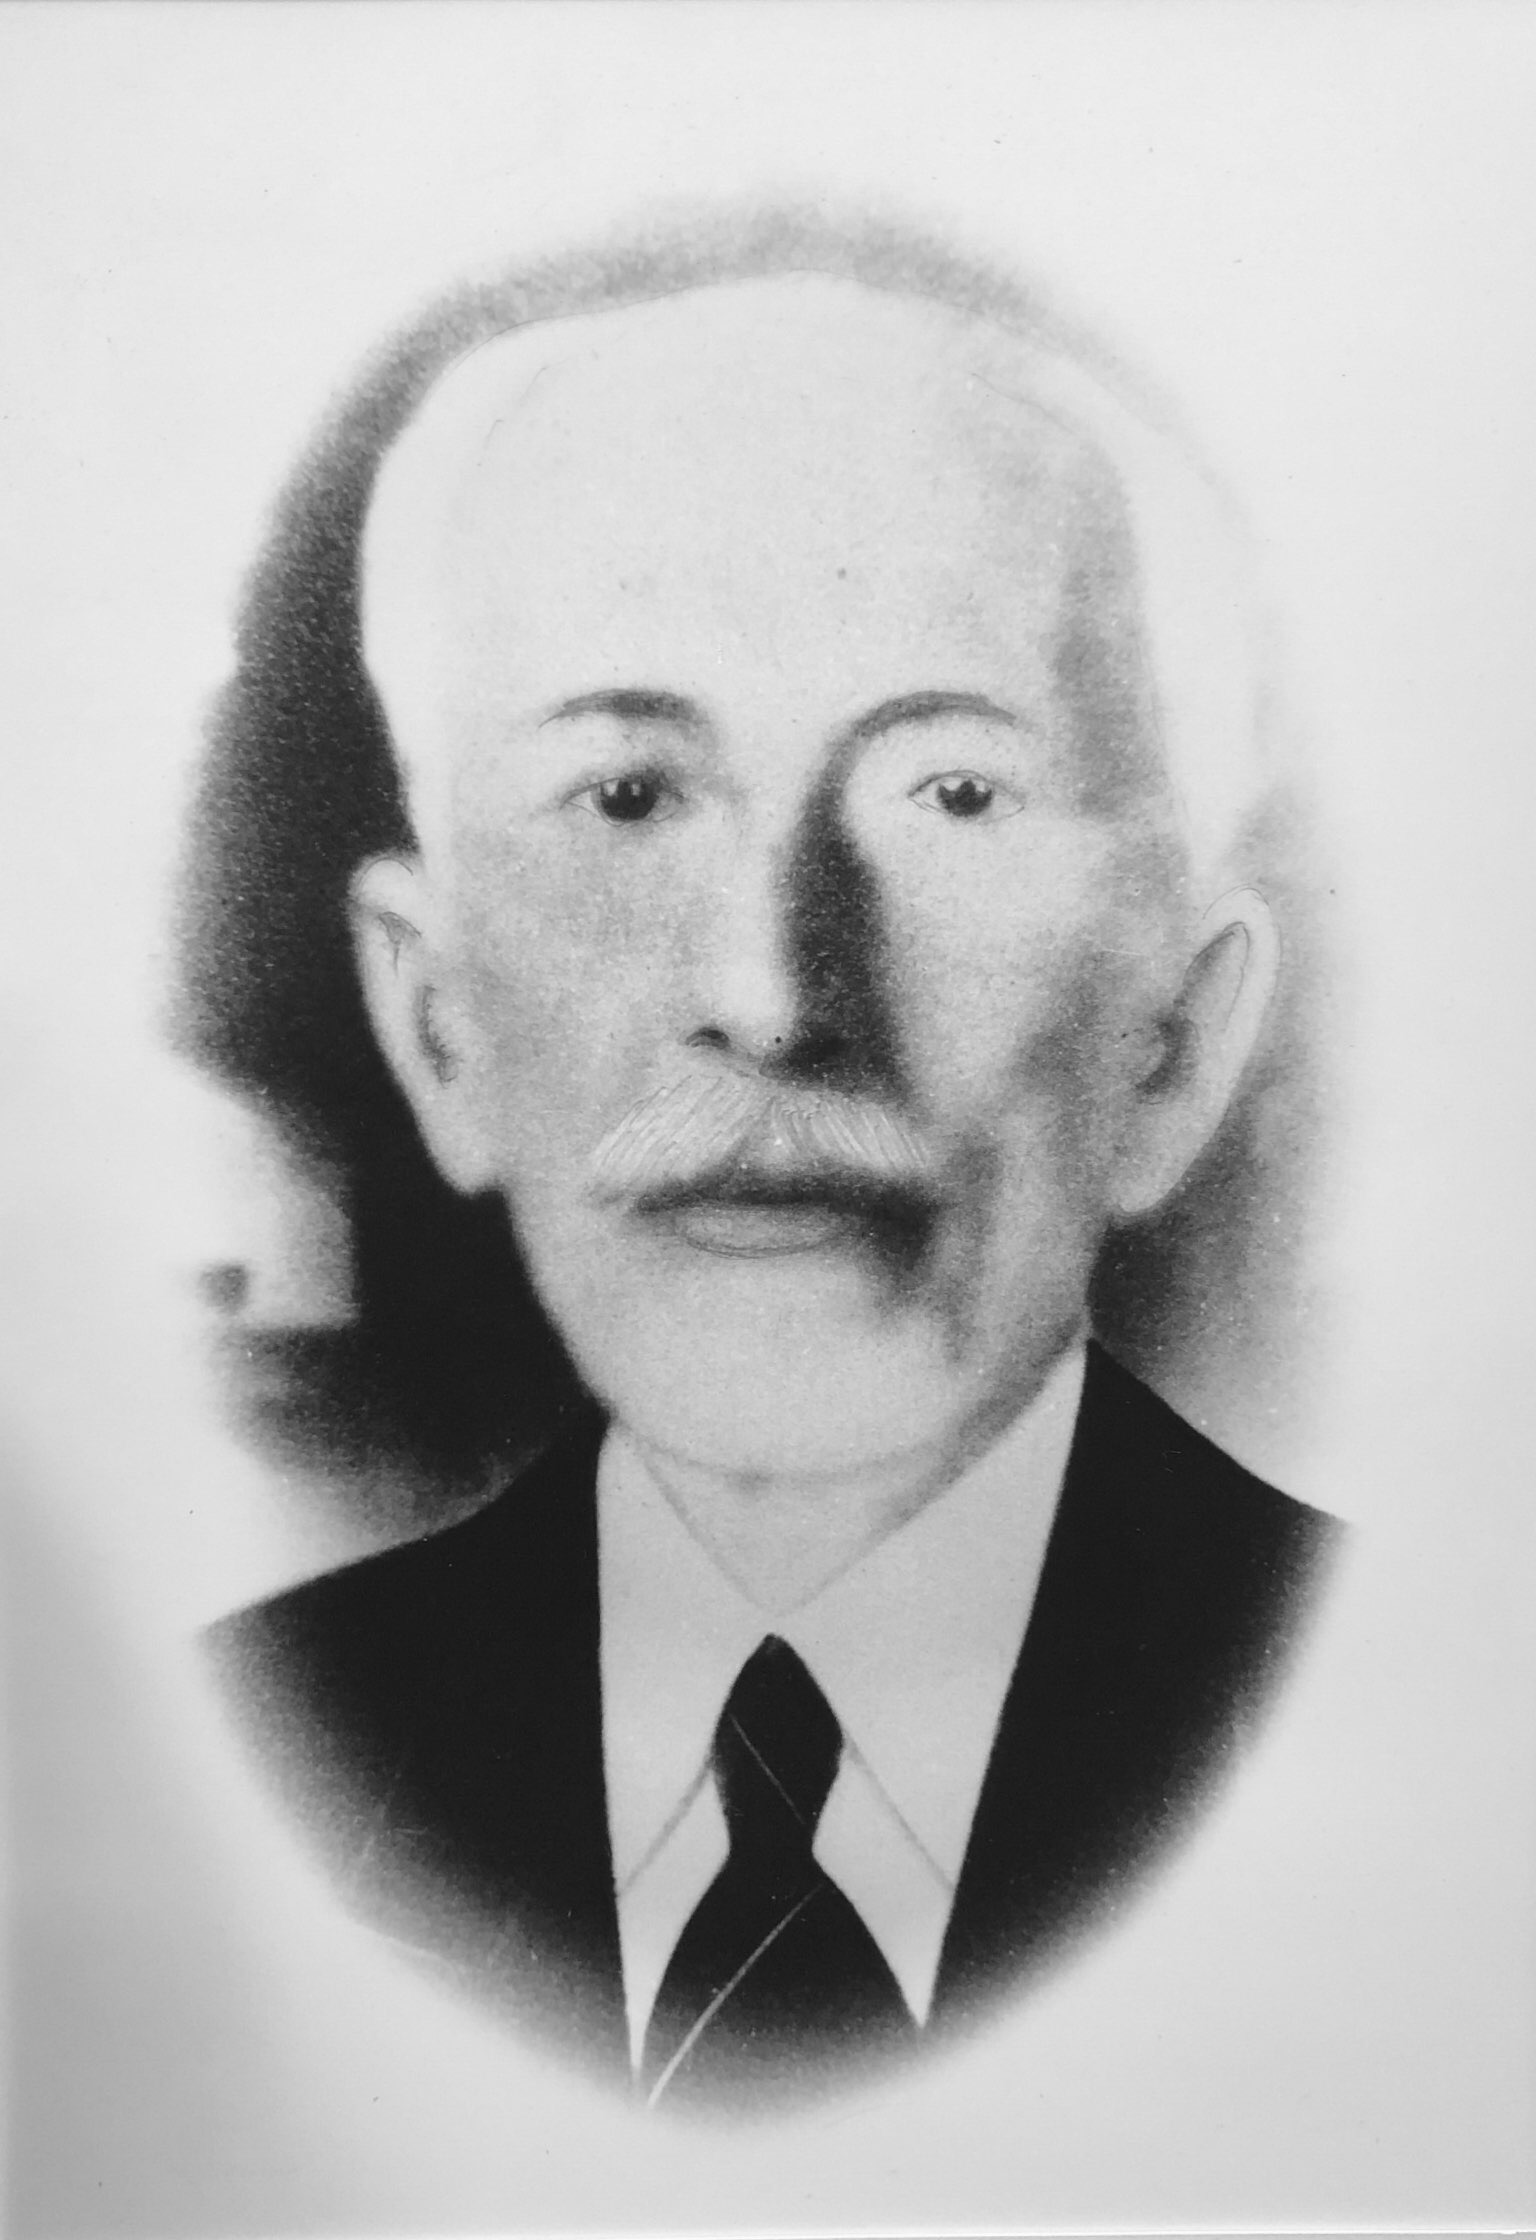 Julio Gomes da Fonseca (1905 - 1909)